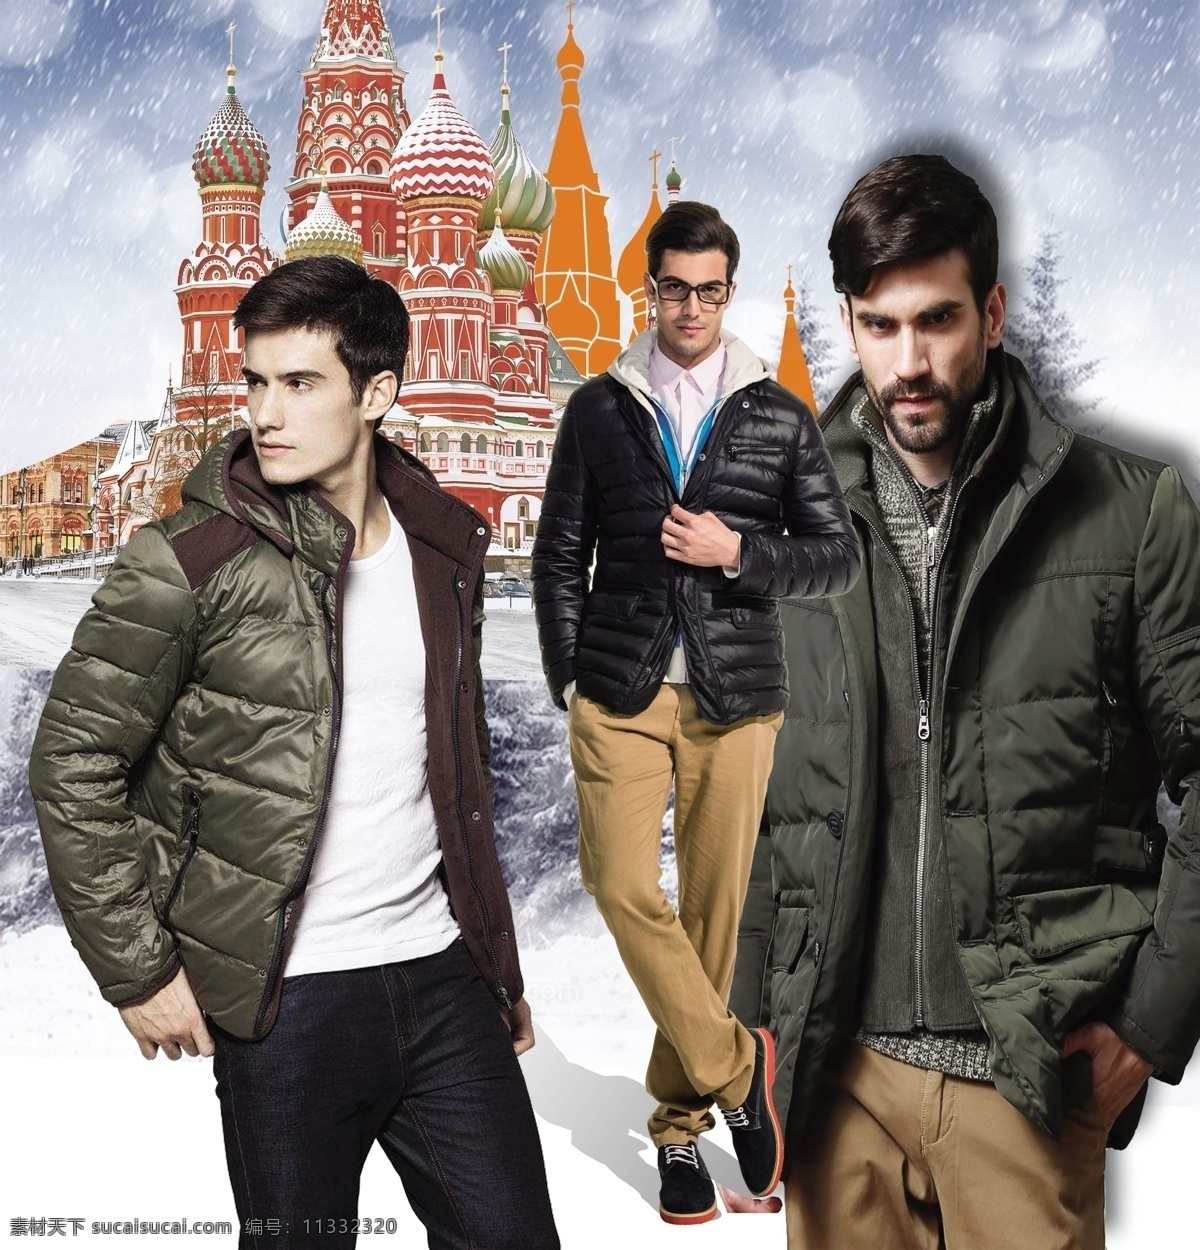 男装模特图片 男装 模特 棉服 羽绒服 冬季 外套 莫斯科 外国模特 分层 雪地 服装